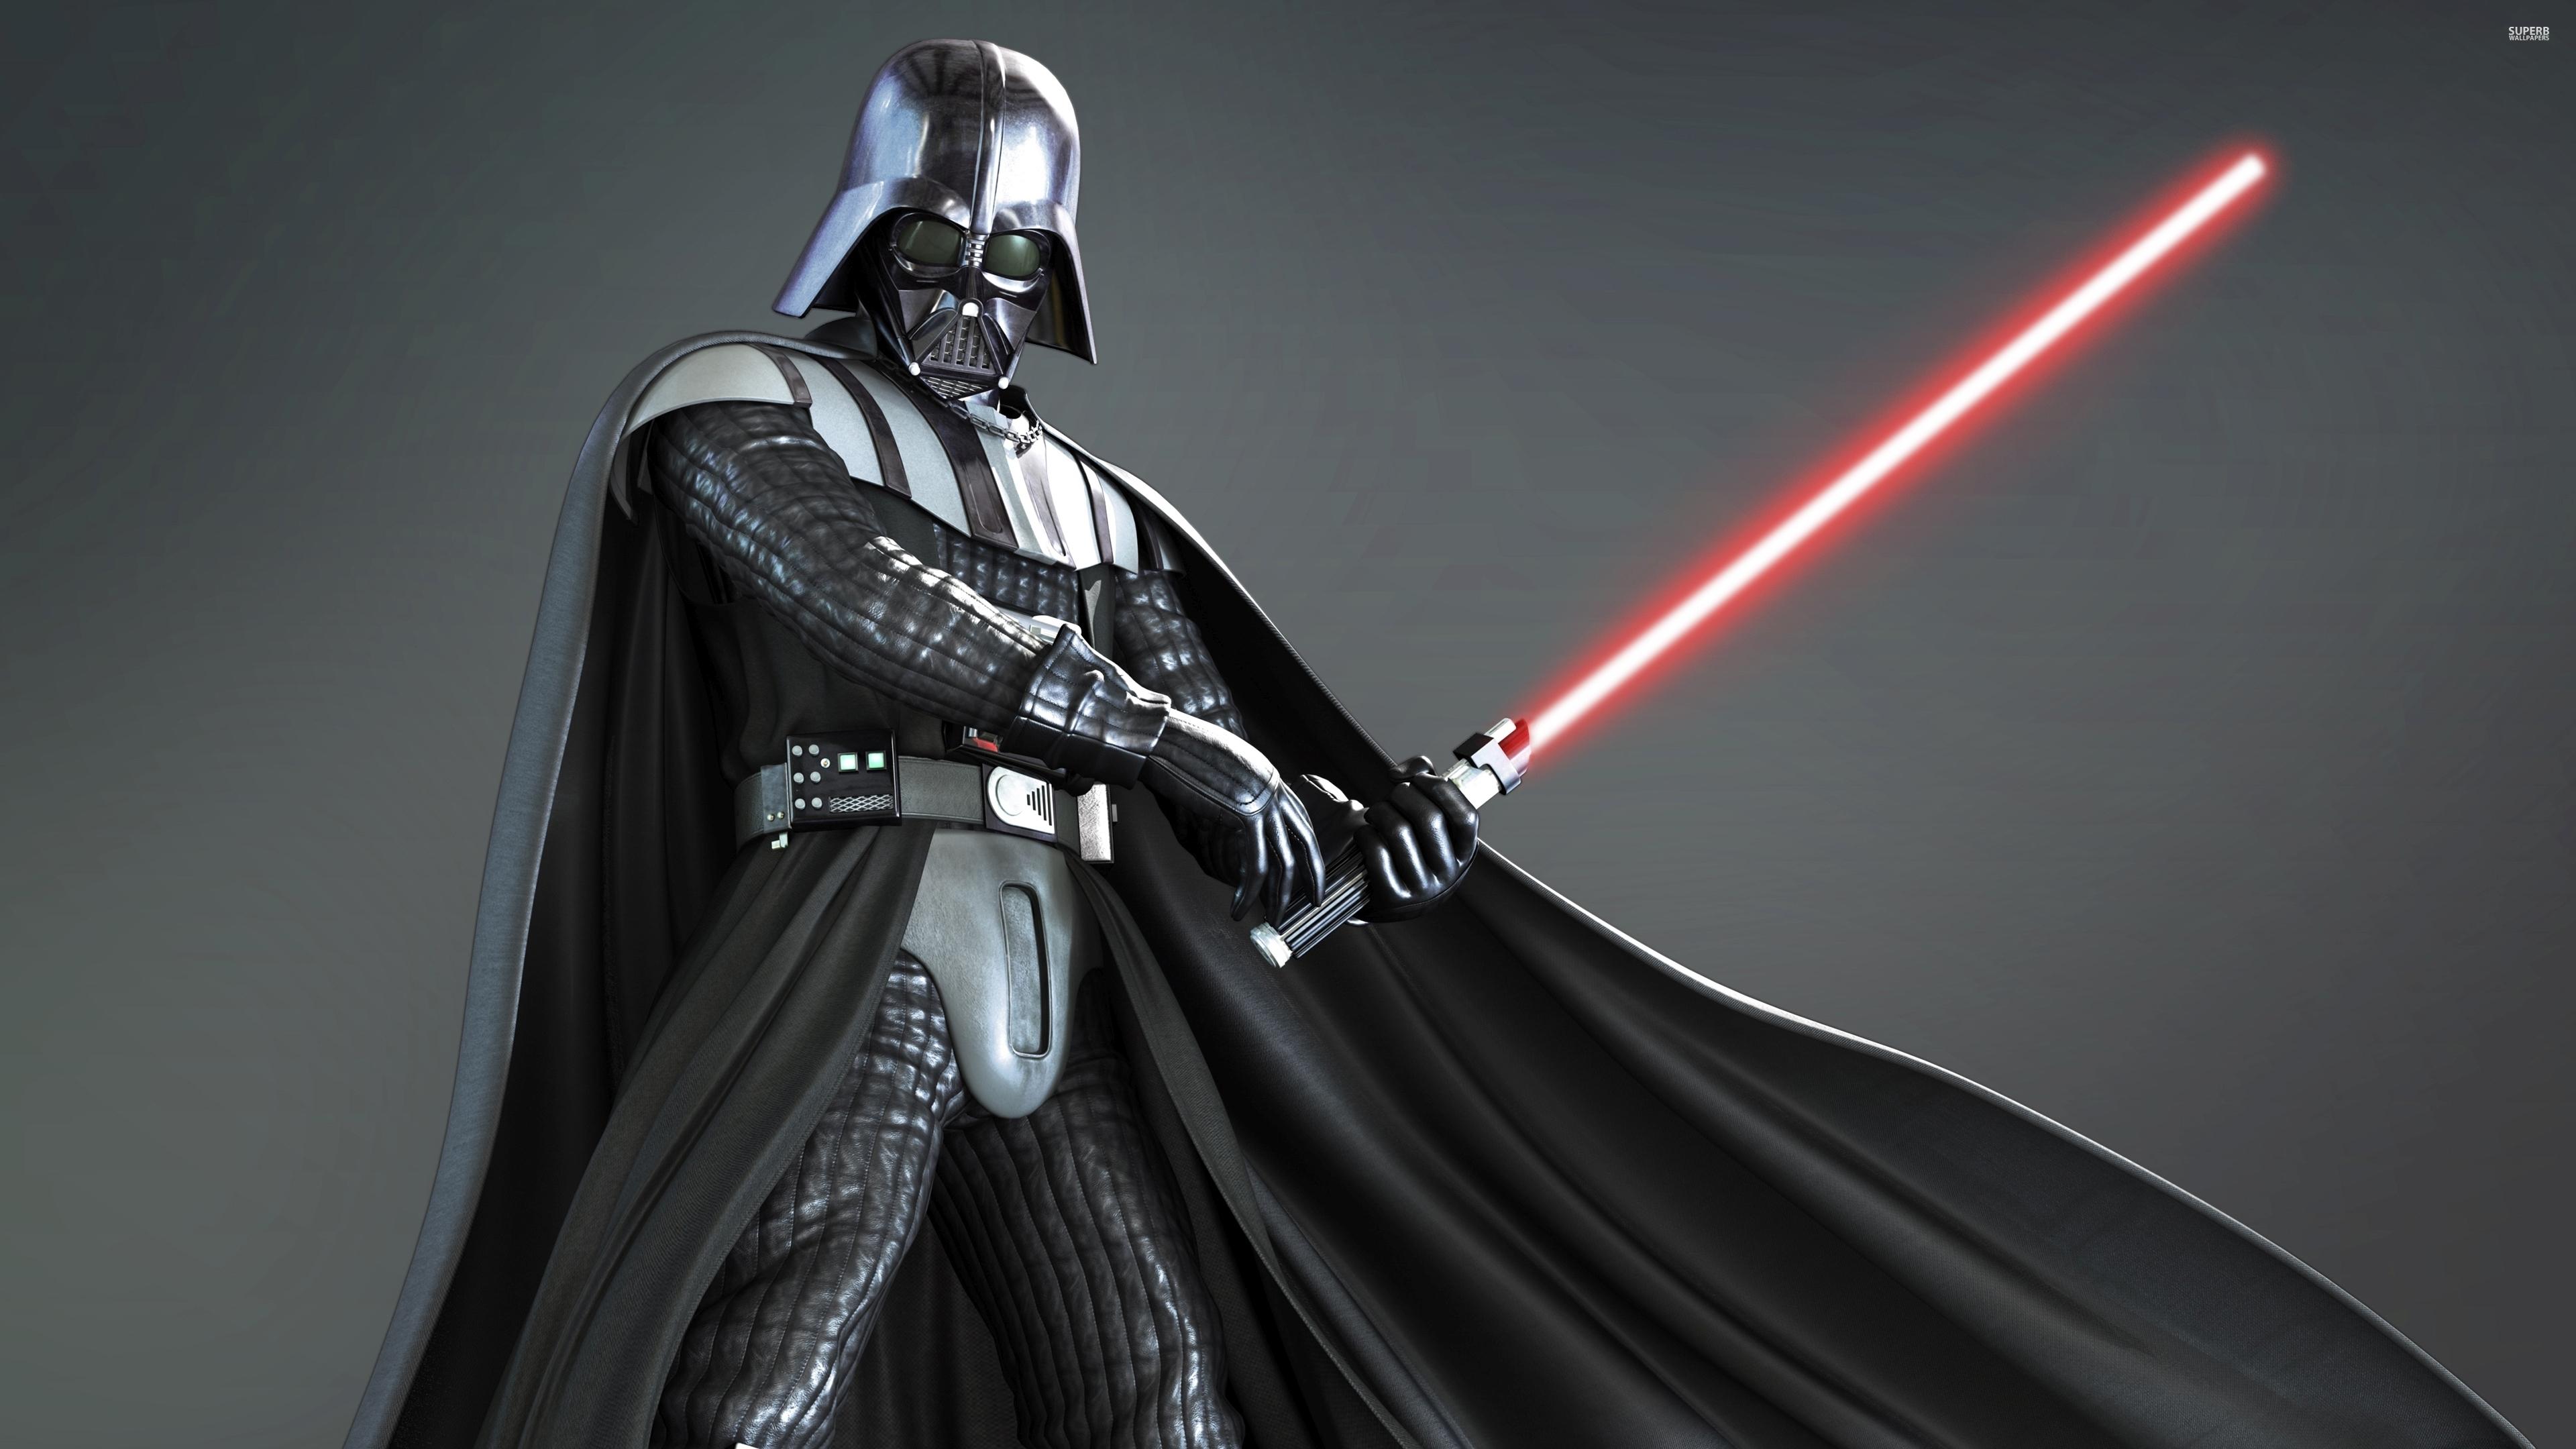 Darth Vader Wallpaper Hd - Star Wars Dark Vader - 3840x2160 Wallpaper -  